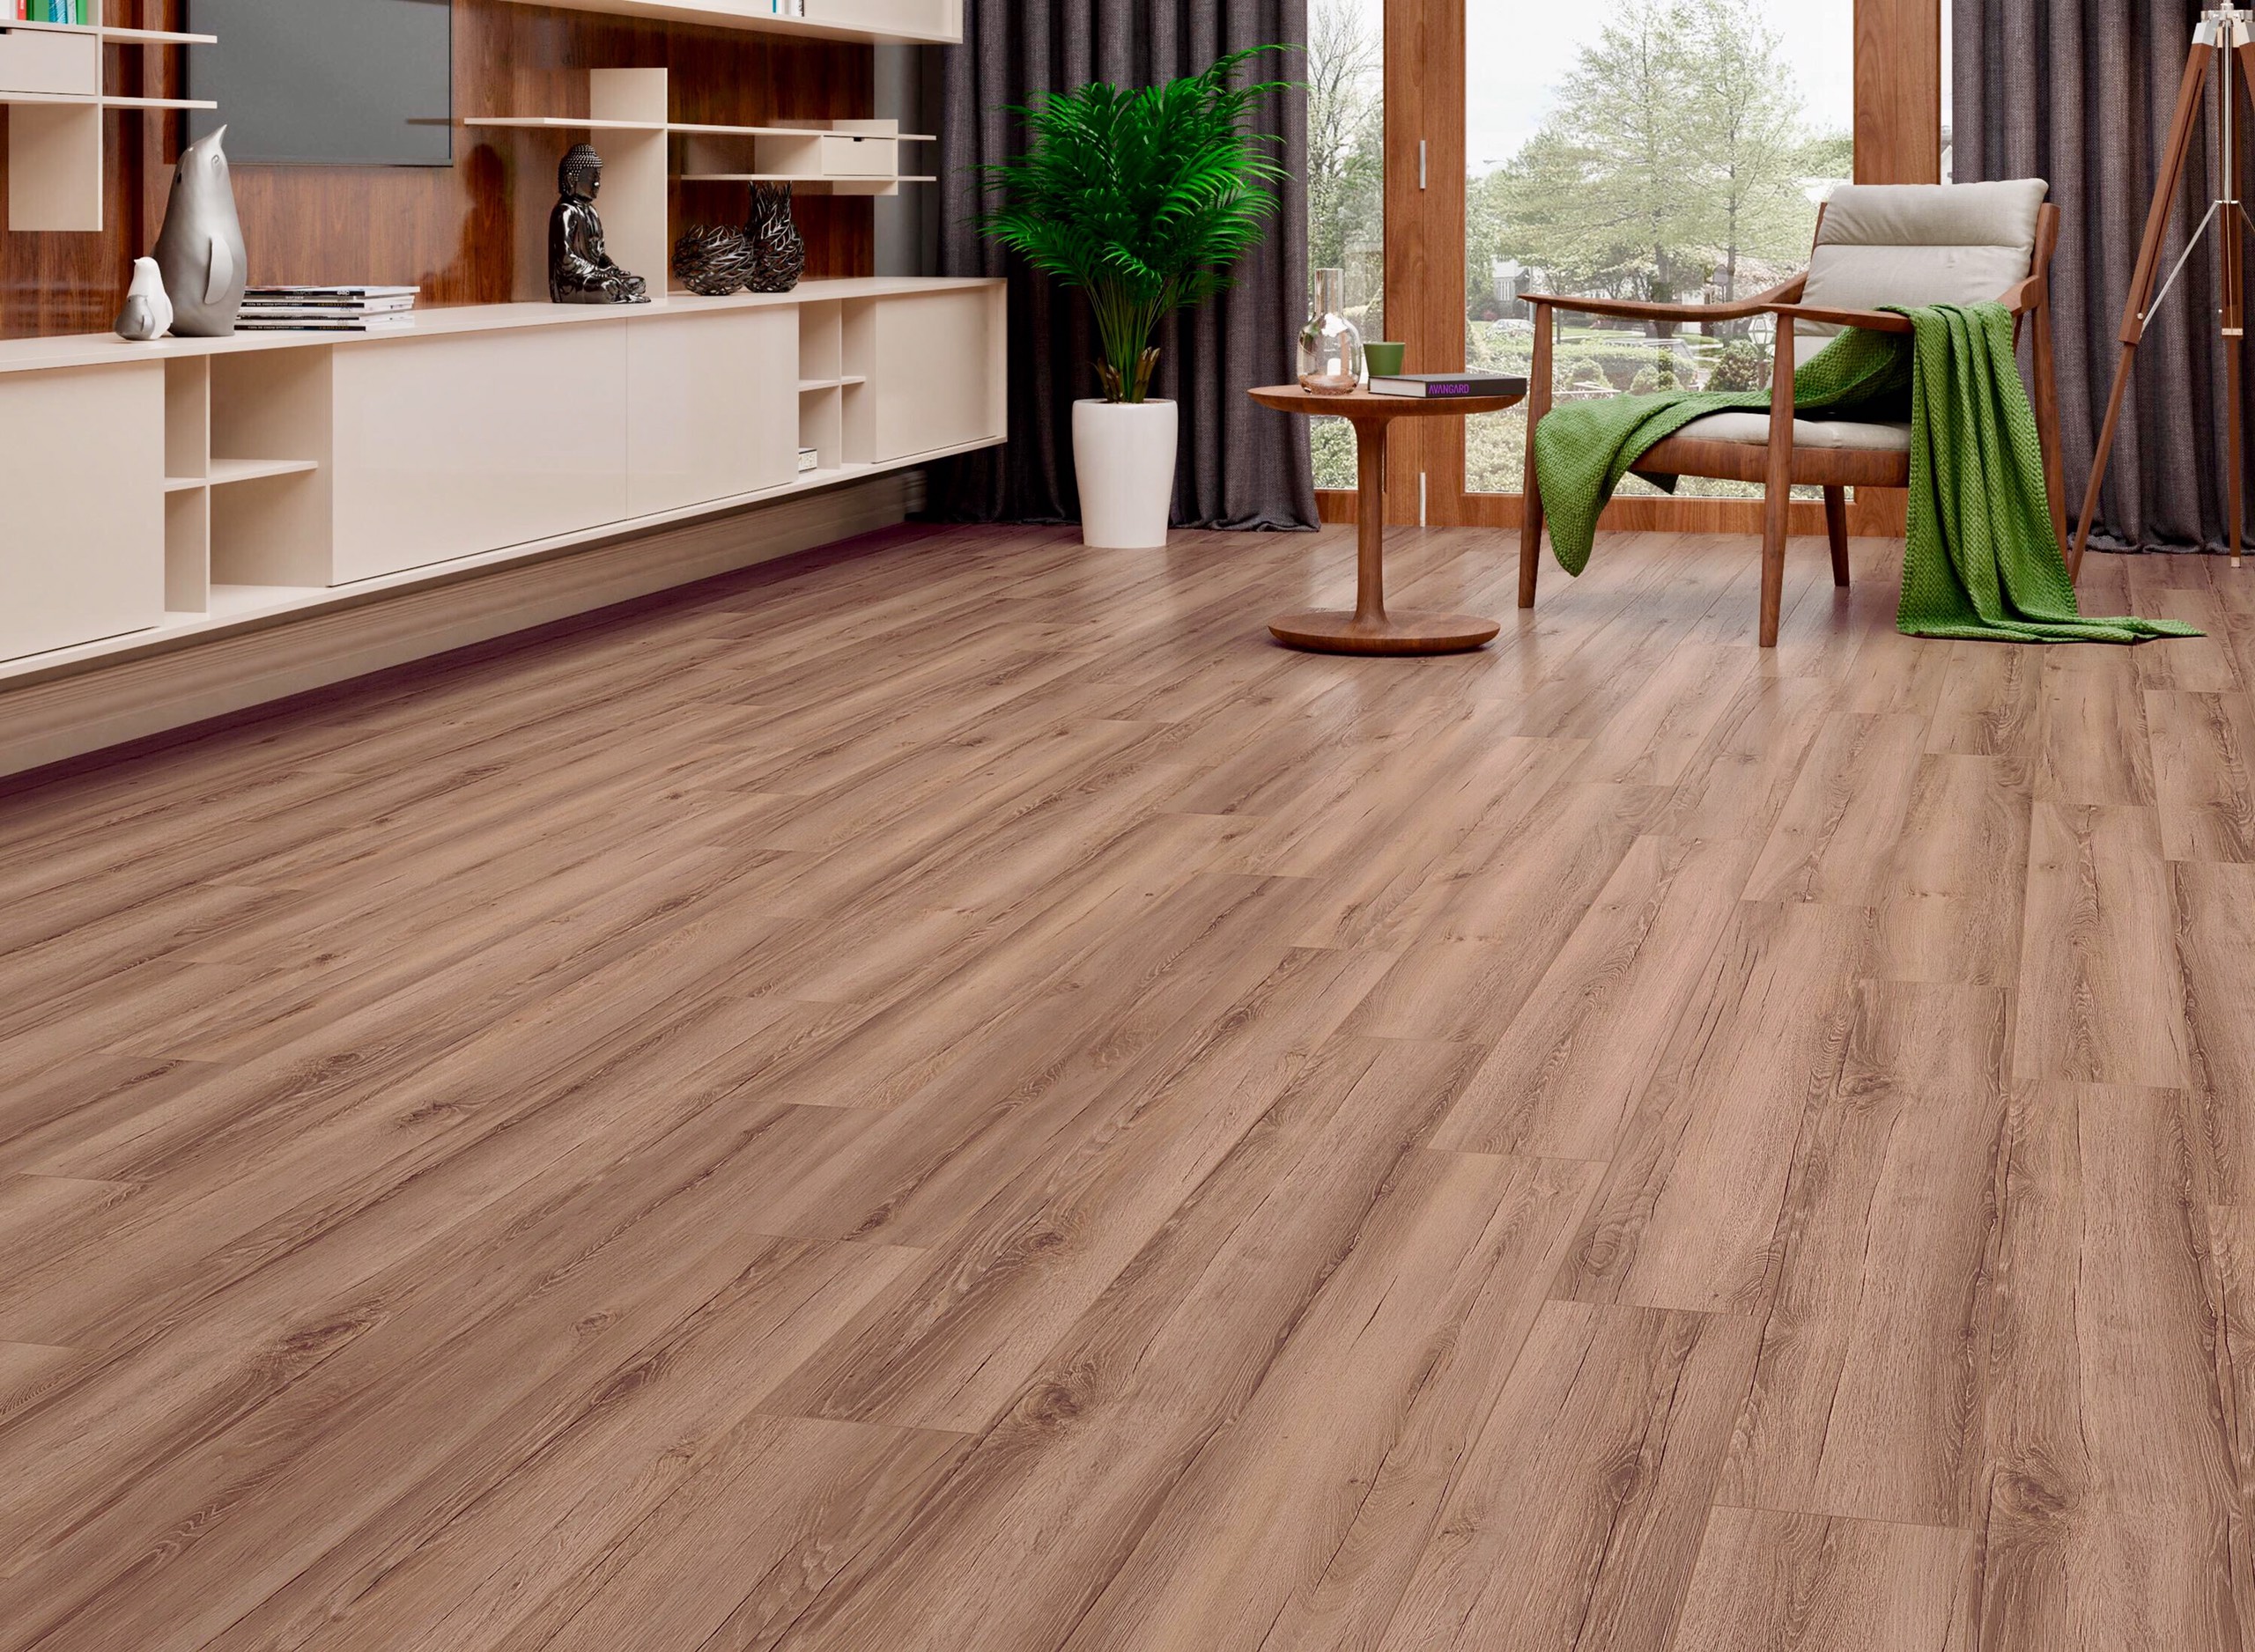 HTH Sài Gòn – Địa chỉ cung cấp sàn gỗ Châu Âu chất lượng E83c8e1a7b779d29c466